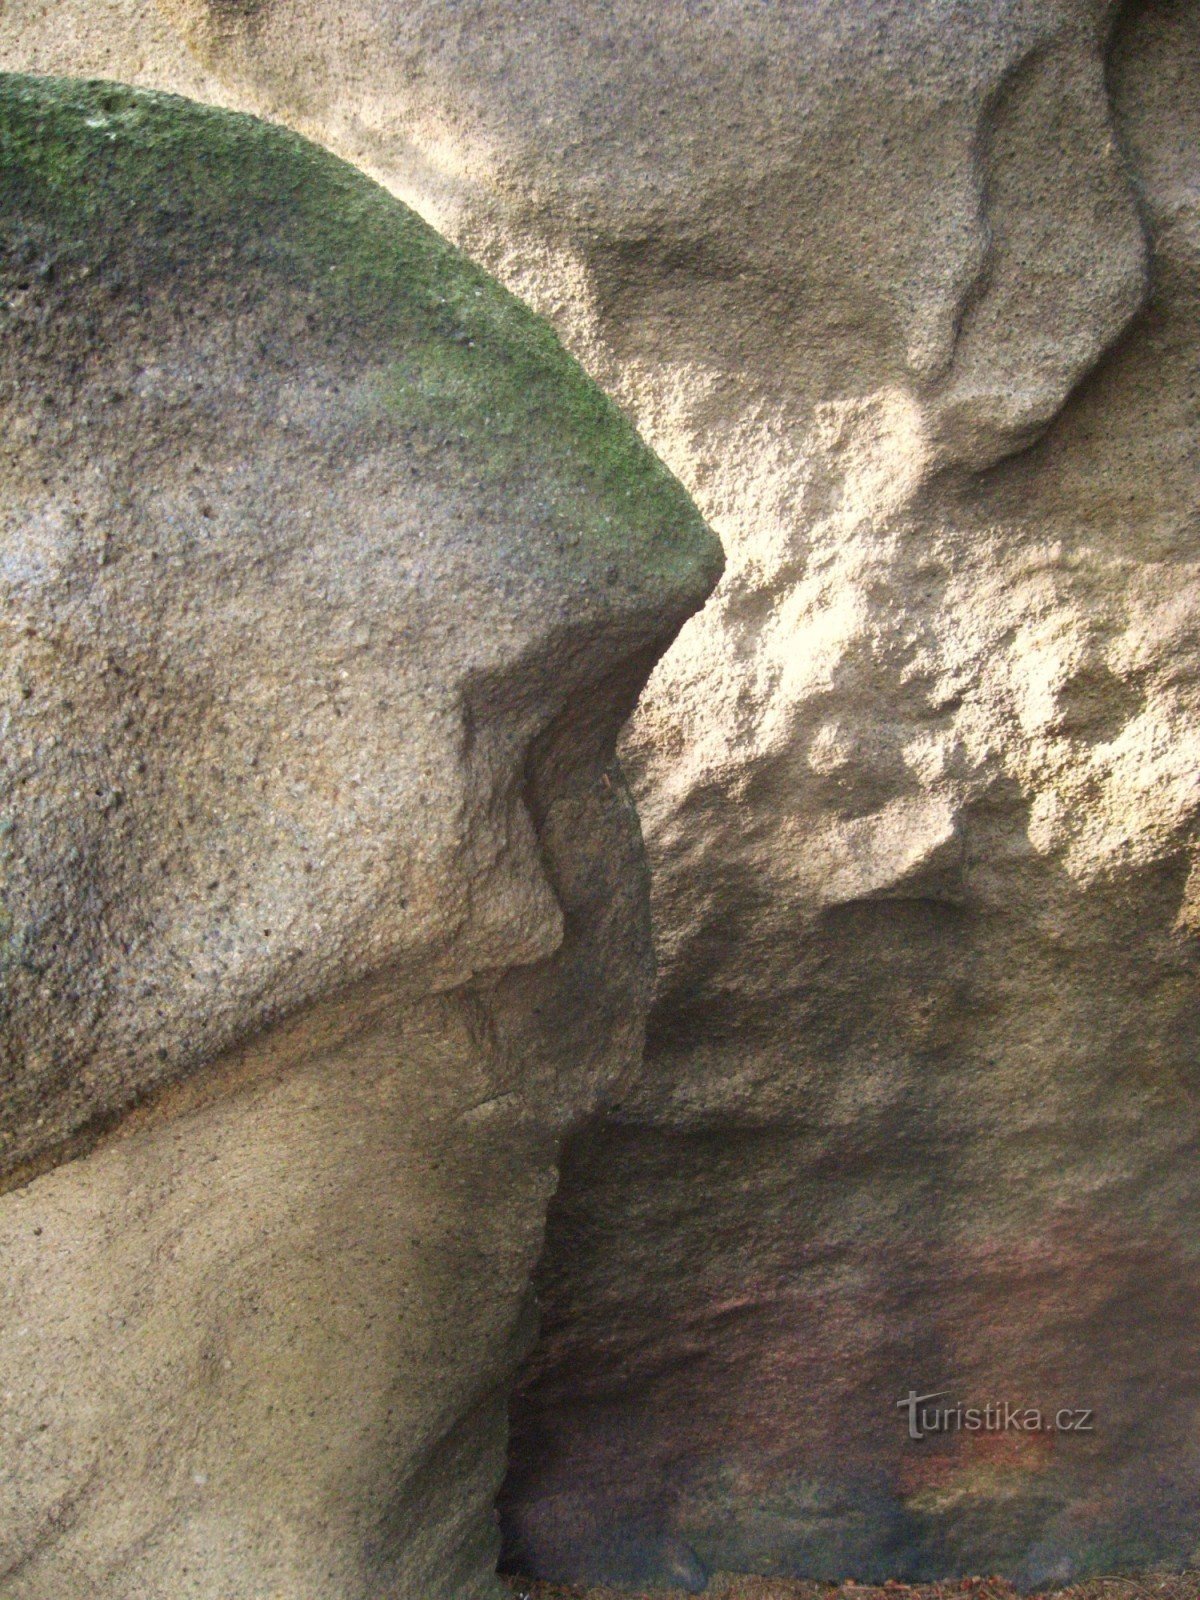 Rocks of Hostýnské vrchy - 15. U Juránků